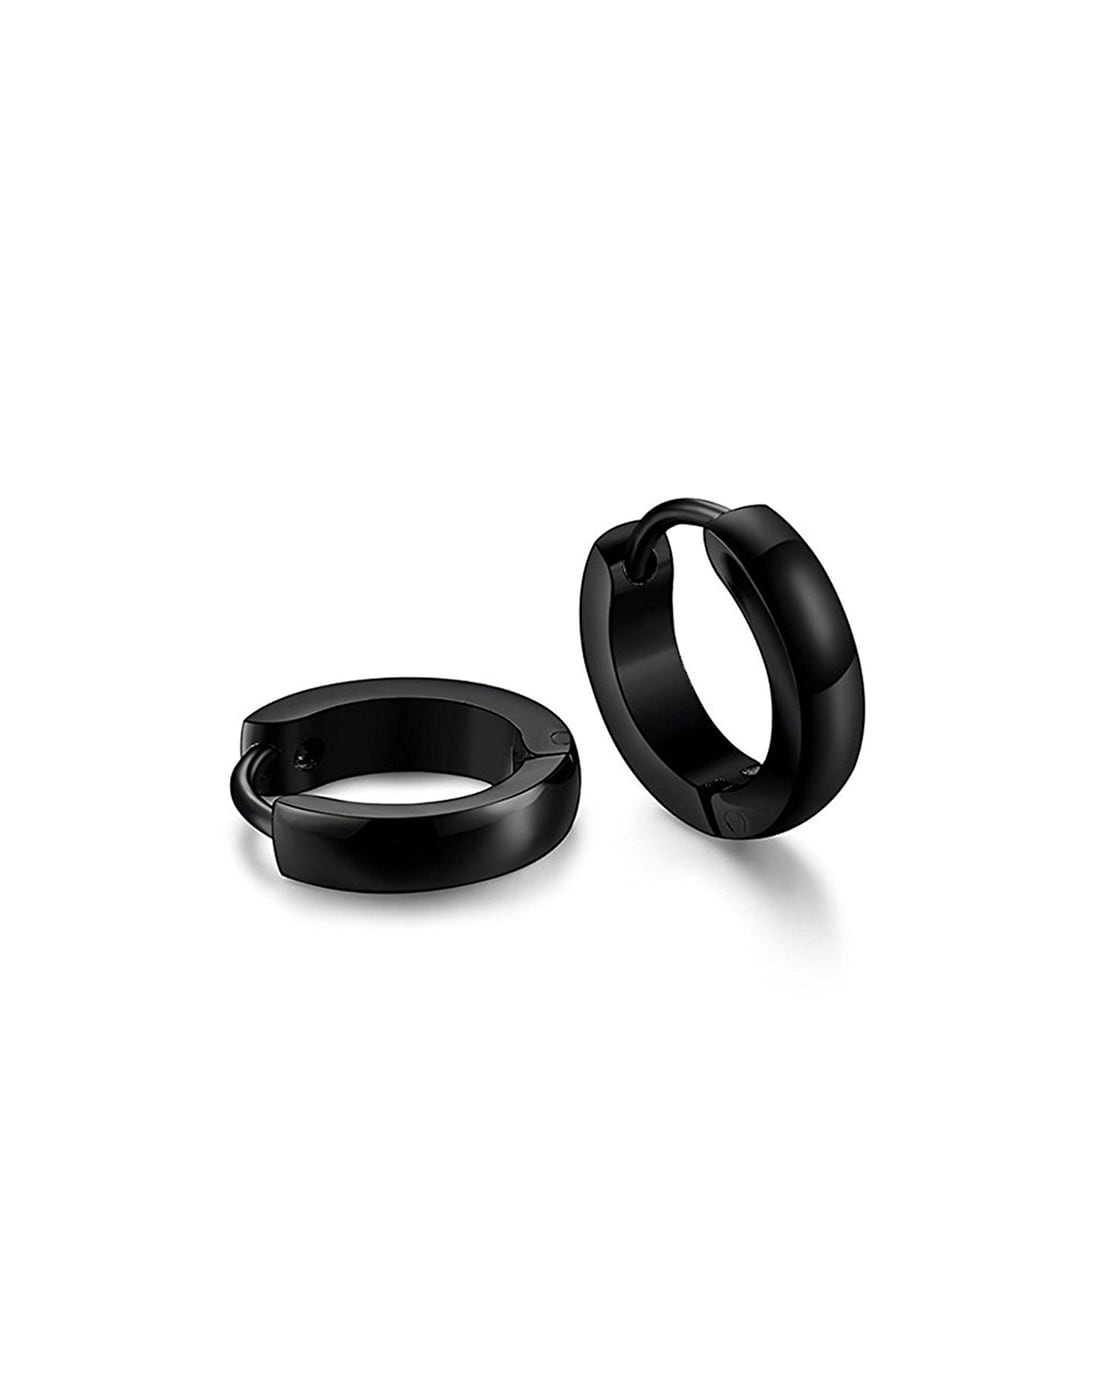 Buy Black Earrings for Women by TRINK Online | Ajio.com